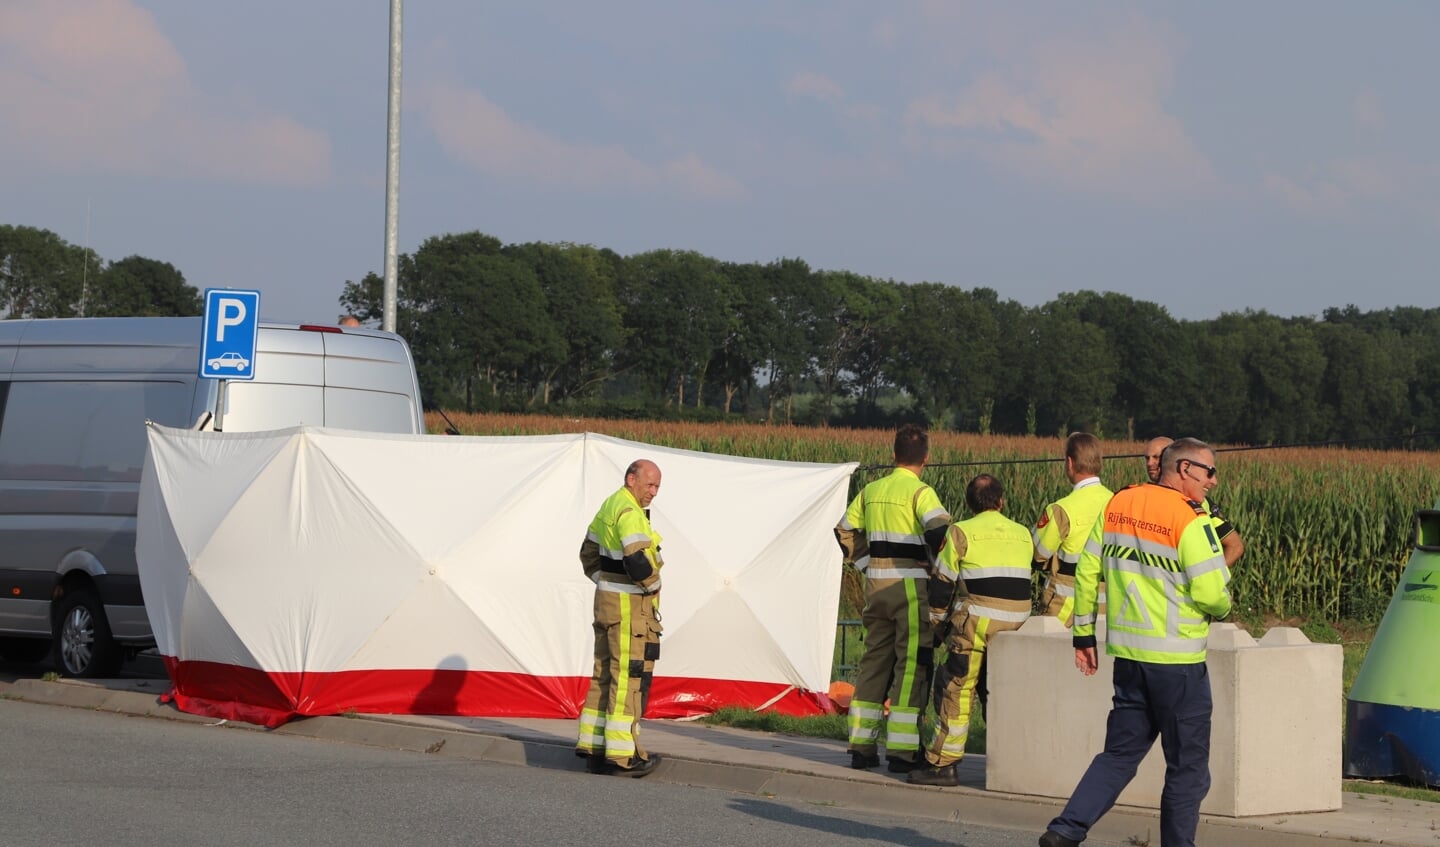 De hulpdiensten zijn donderdag 5 augustus opgeroepen voor een incident op de parkeerplaats Shell Molenkamp